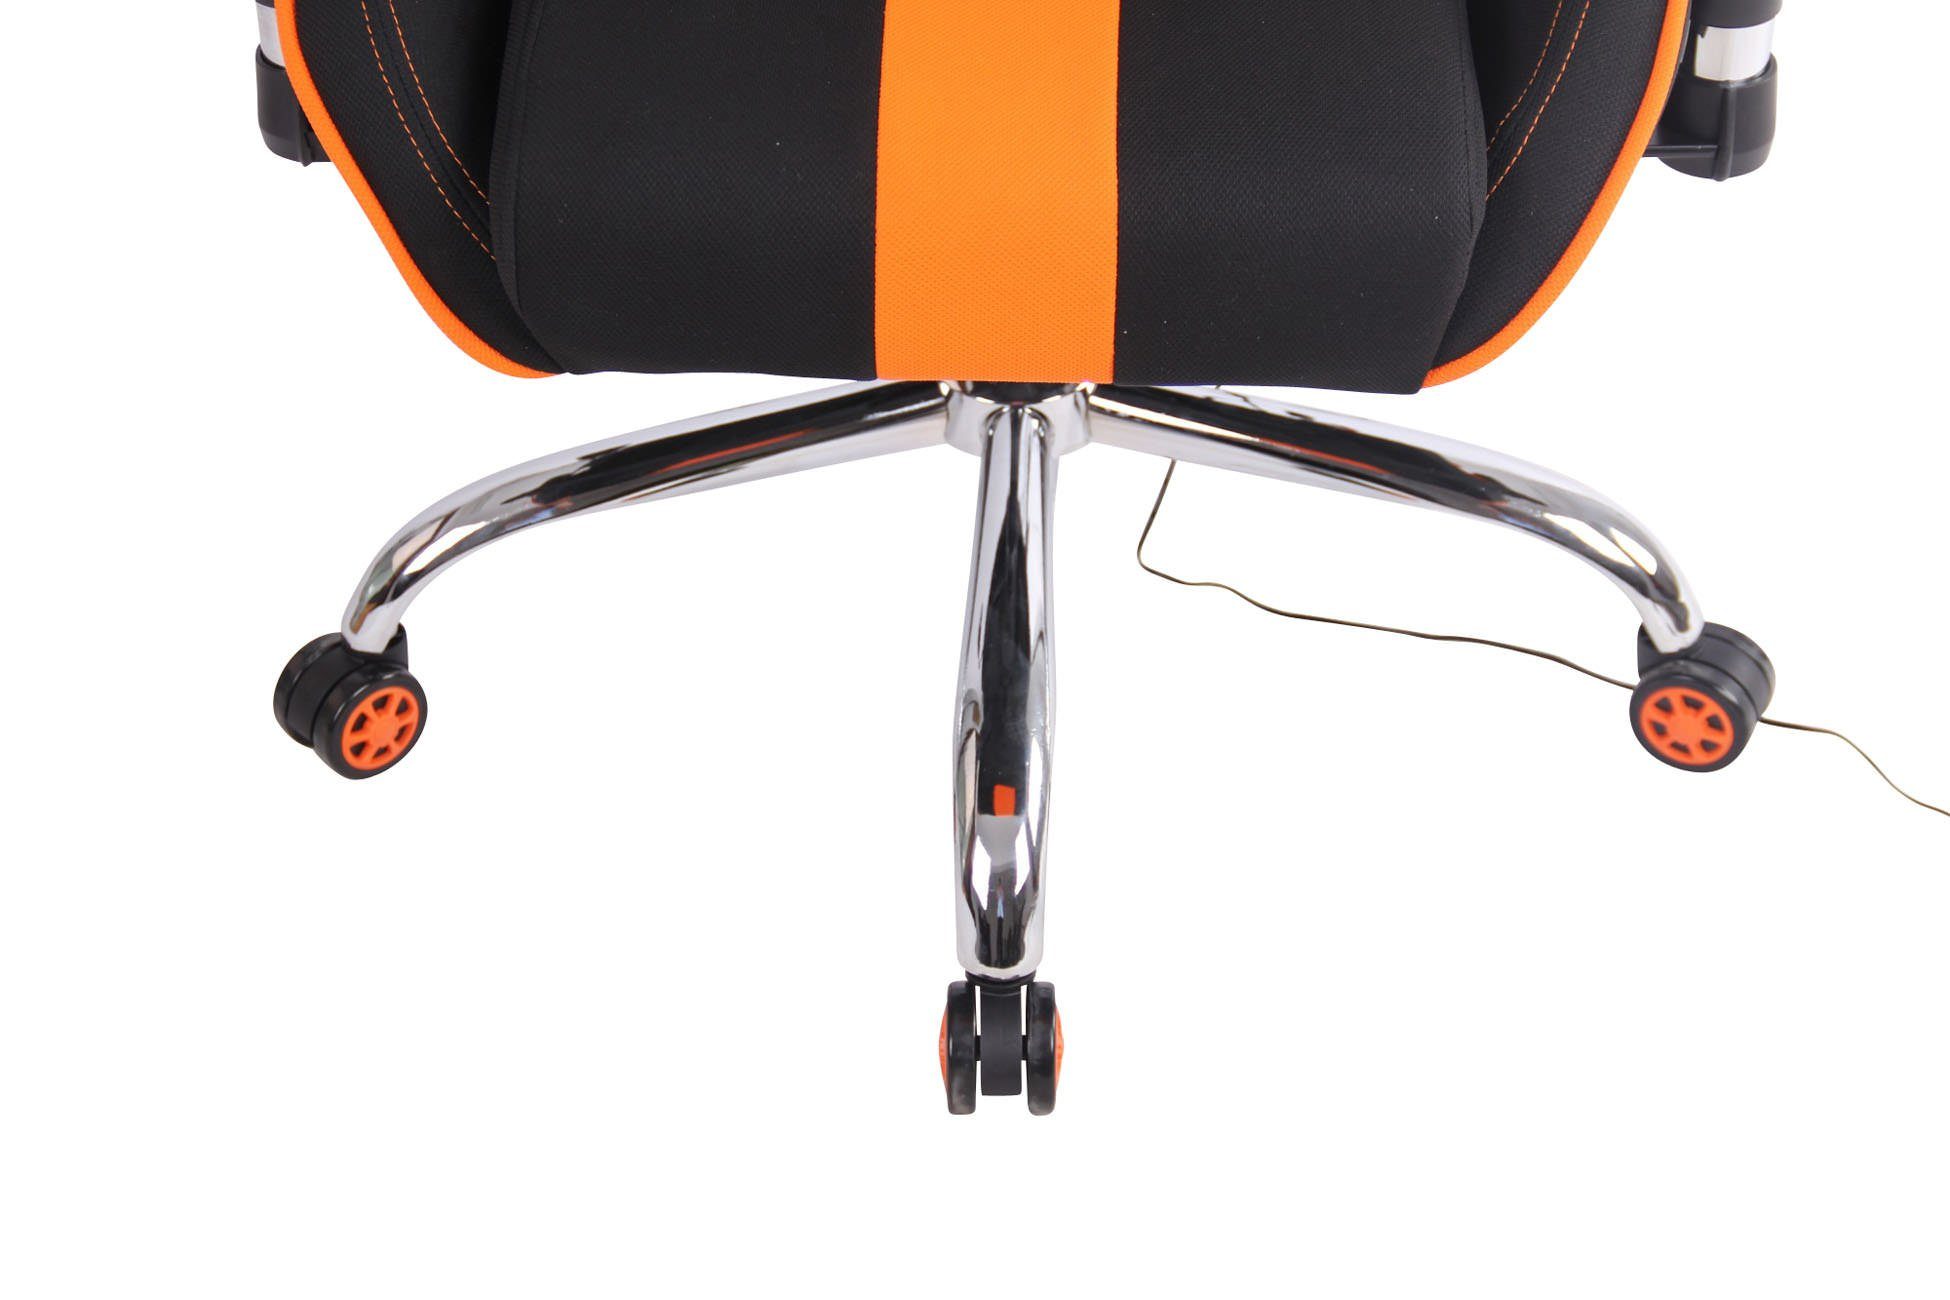 CLP Massagefunktion schwarz/orange mit Gaming Limit Stoff, XM Chair